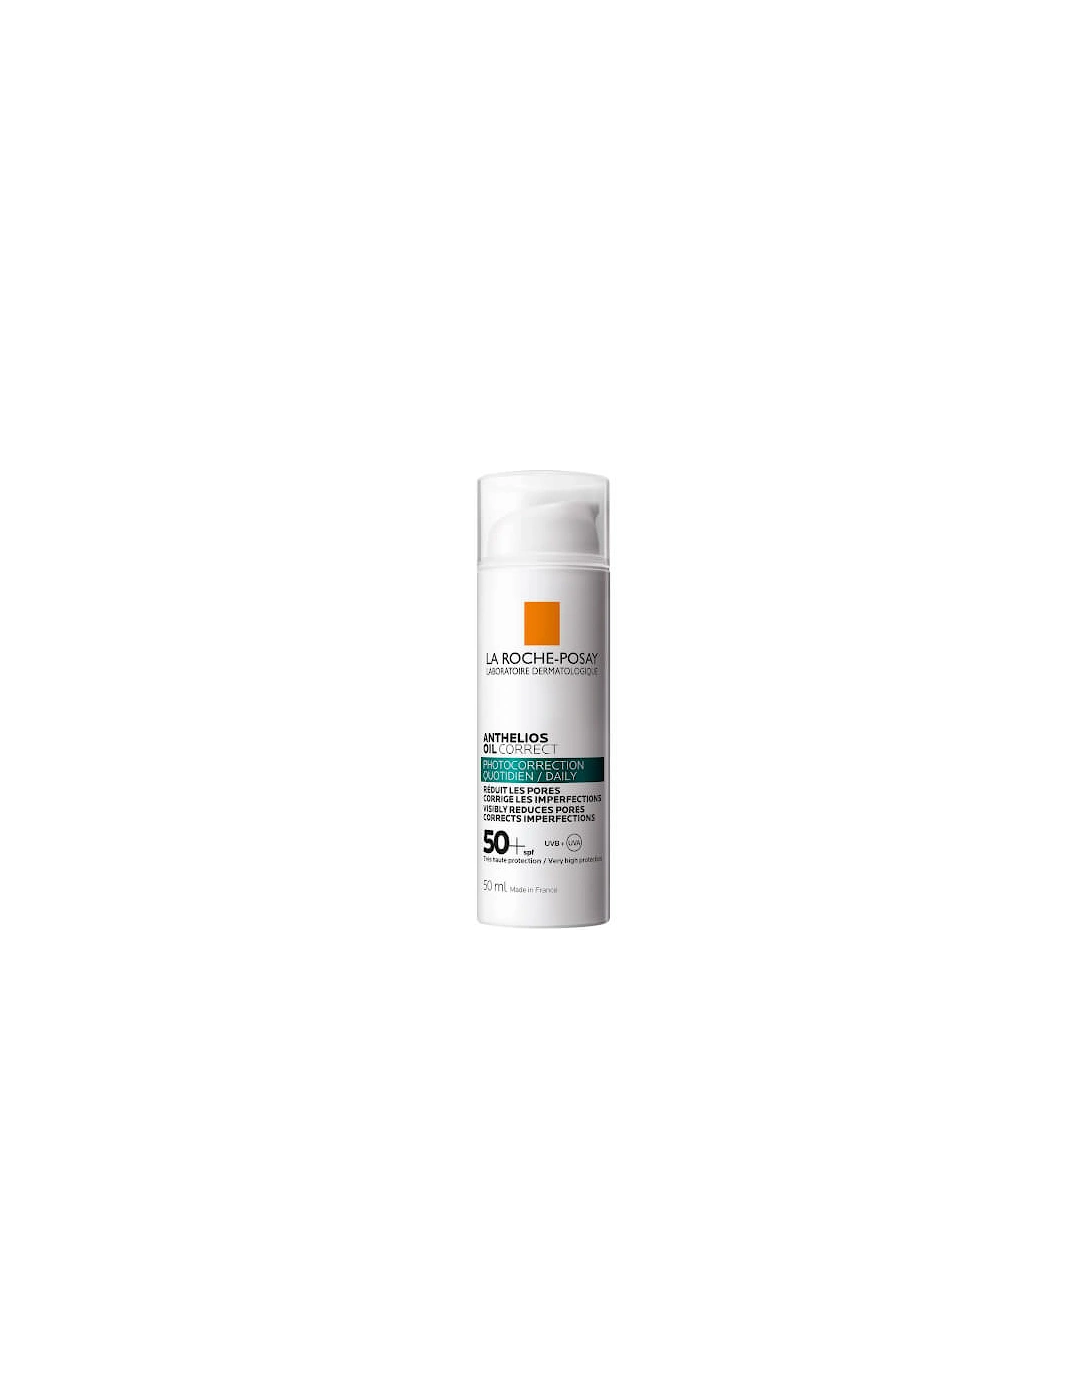 La Roche-Posay Anthelios Oil Correct Suncream SPF50 50ml, 2 of 1